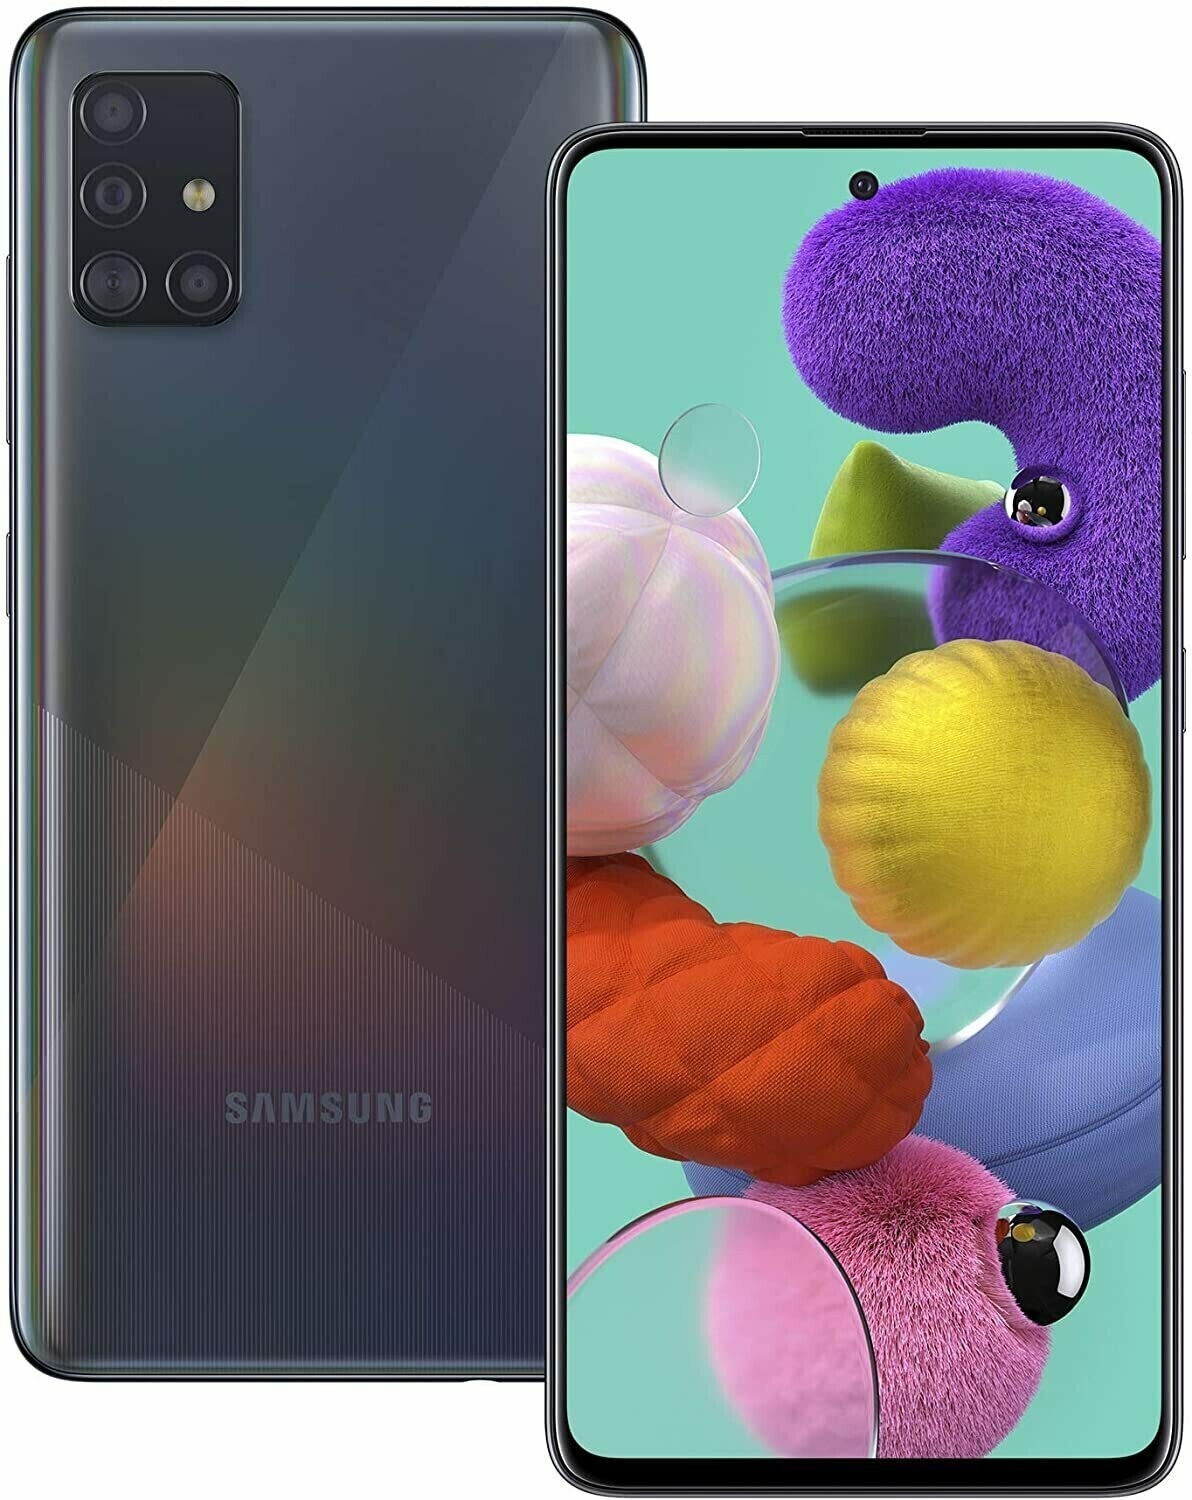 BOXED SEALED Samsung Galaxy A51 64GB UNLOCKED